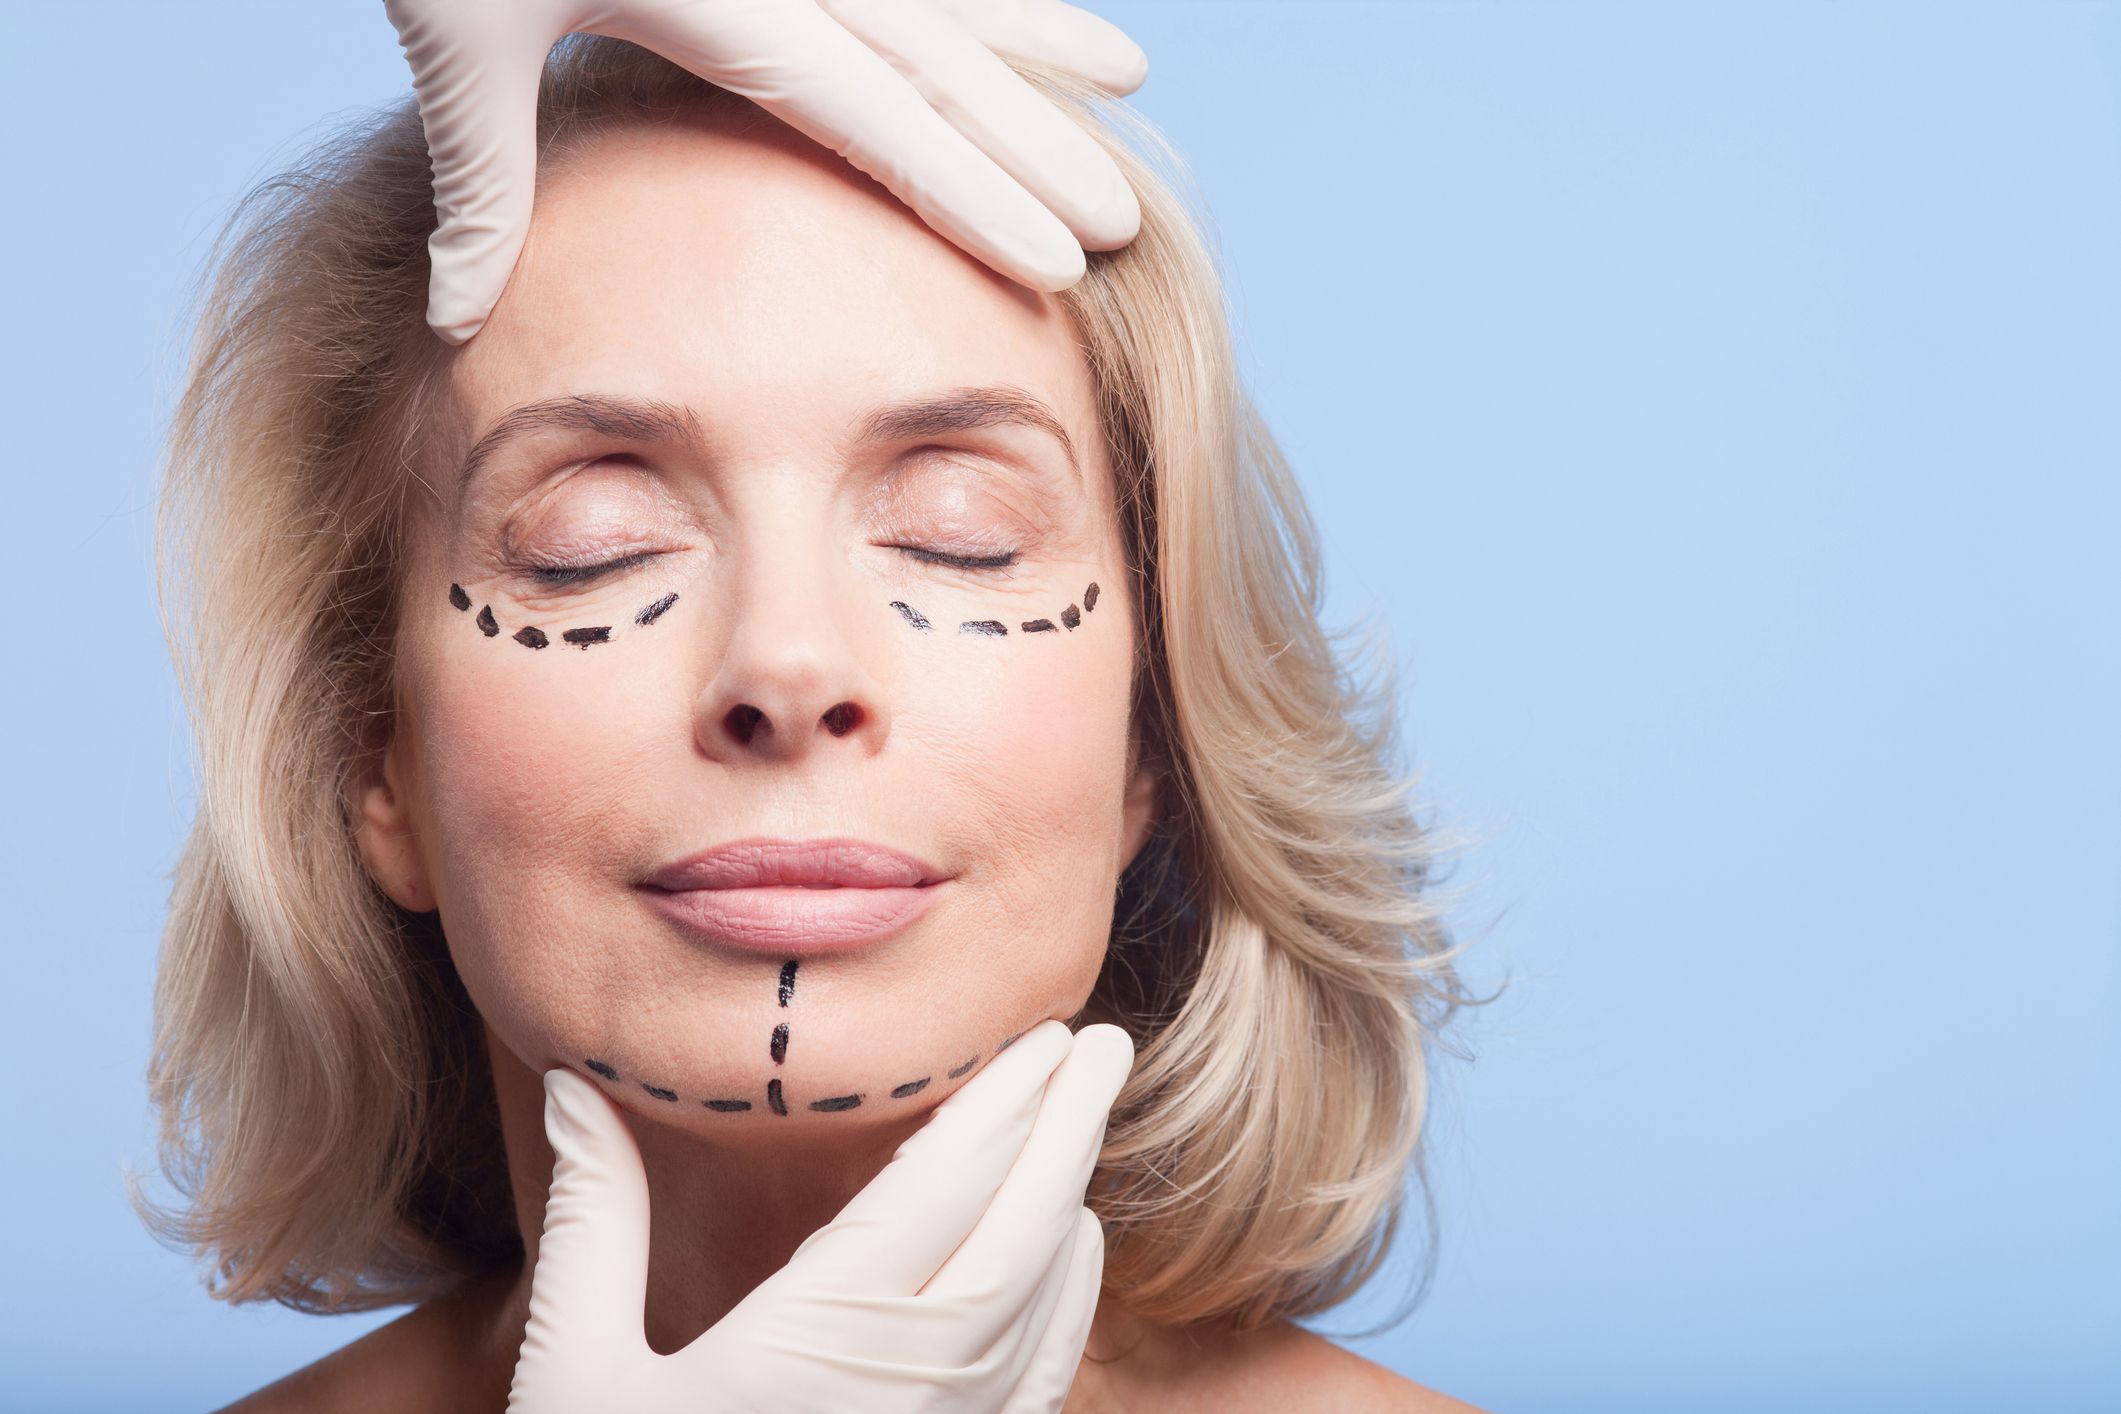 Mujer rubia con marcas en la cara de donde se le hará la cirugía